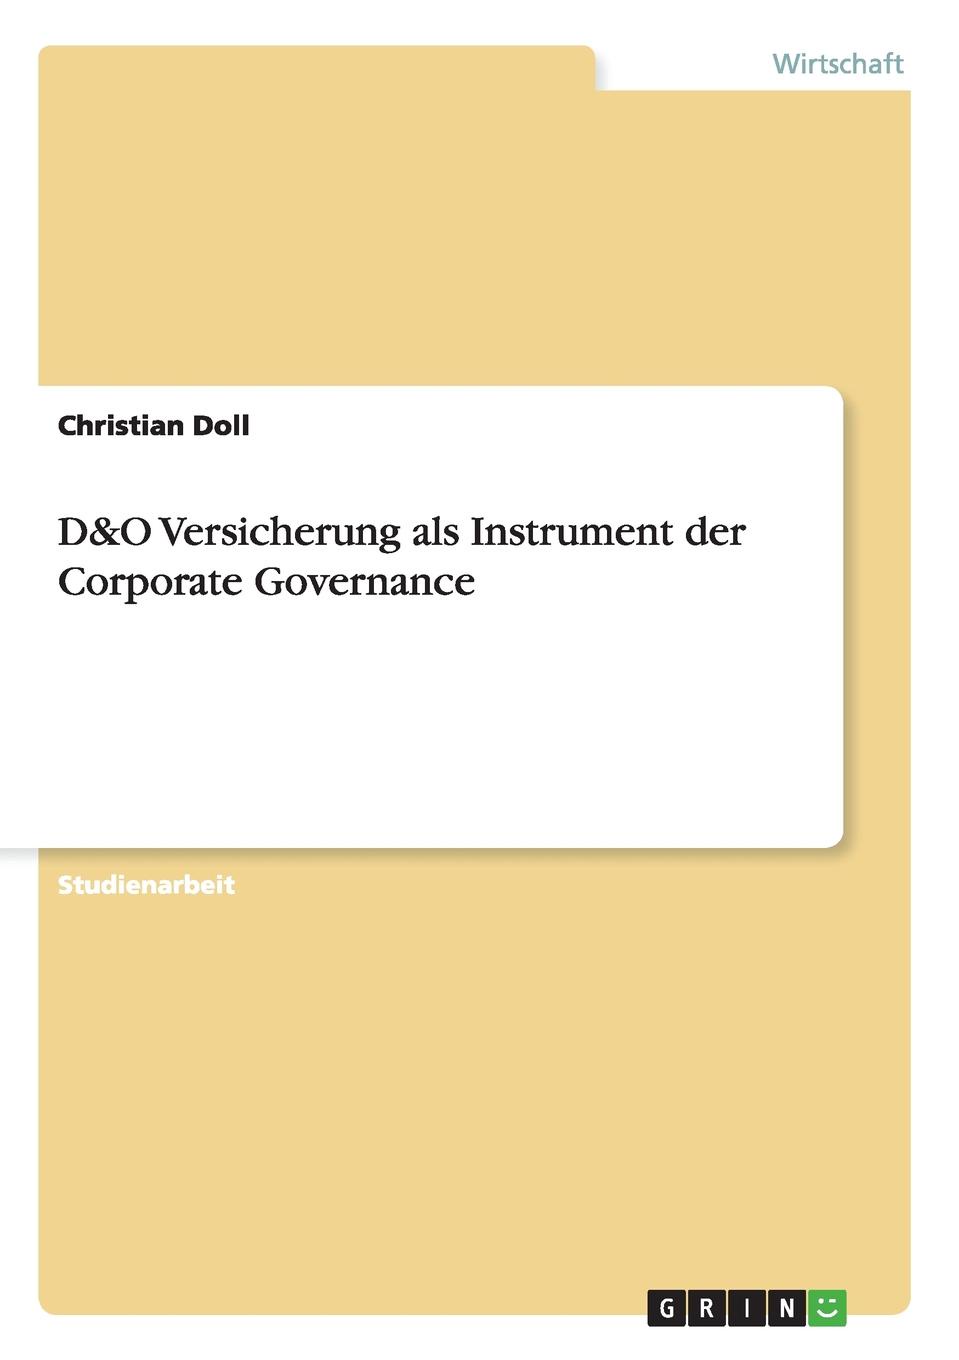 Christian Doll D.O Versicherung als Instrument der Corporate Governance